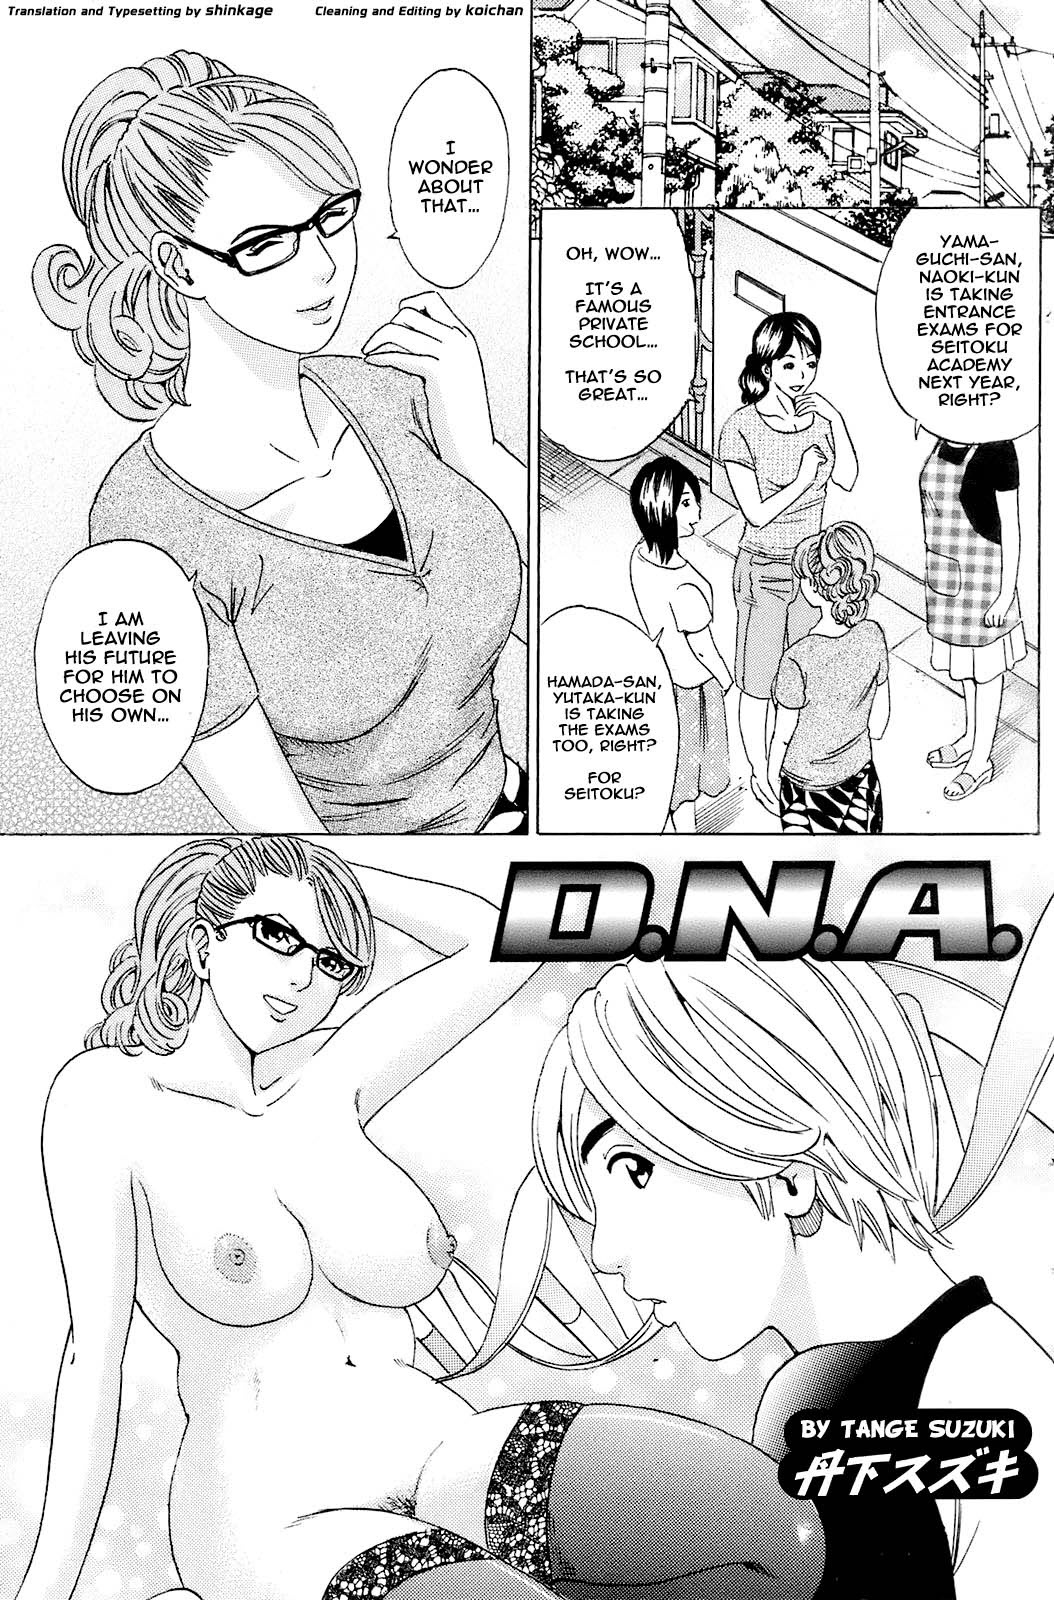 Tange Suzuki - D.N.A. by Tange Suzuki Hentai Comic